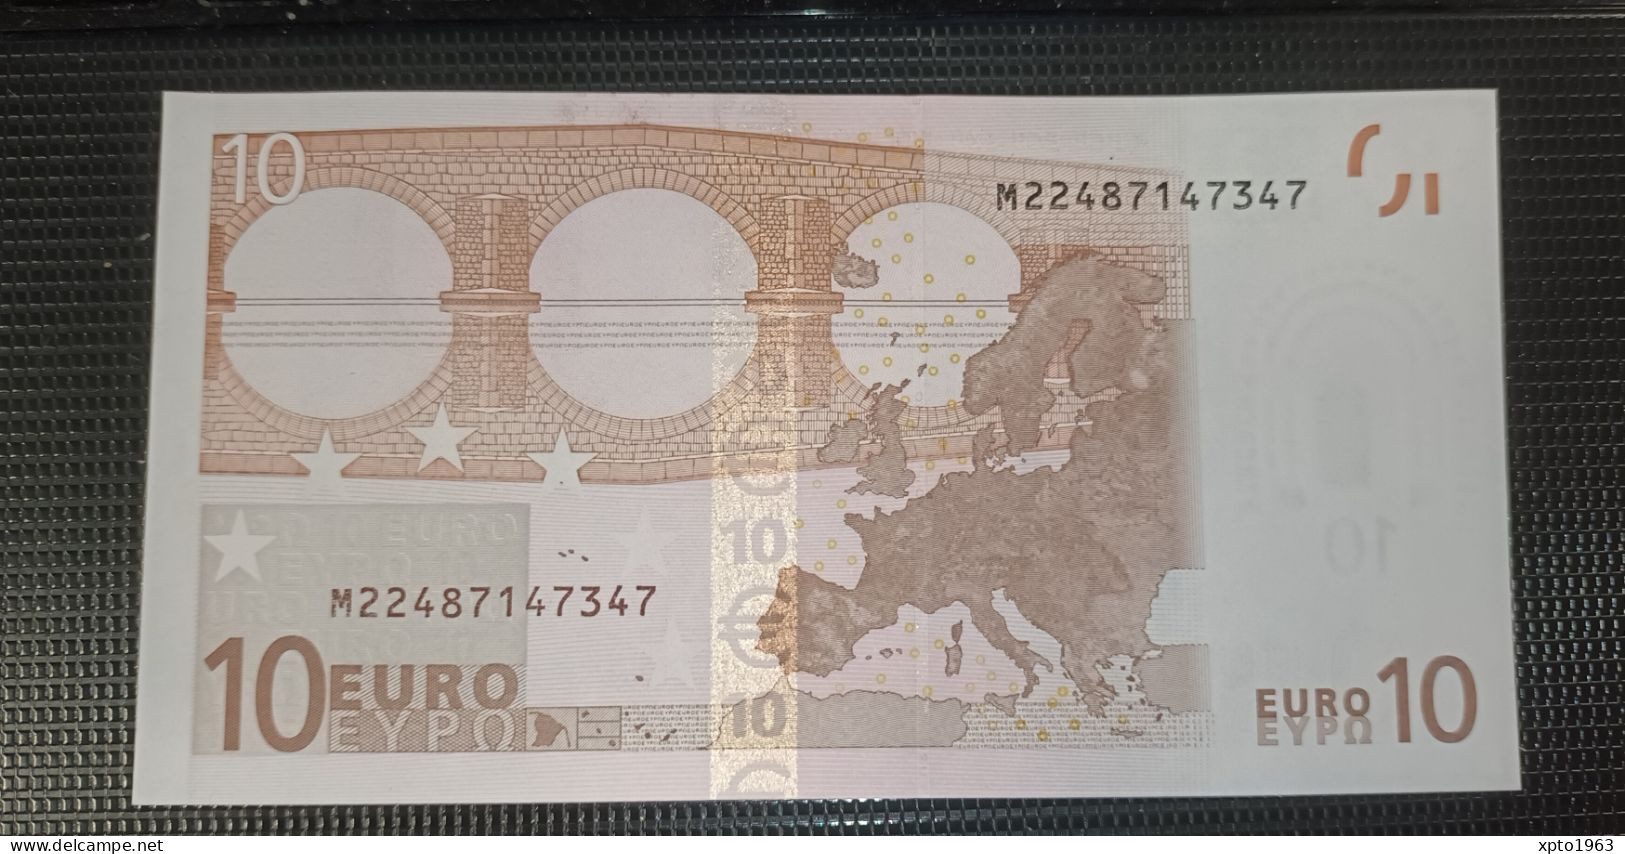 10 EURO - PORTUGAL (M) U004 A4 (Trichet) M22487147347 - UNC - FDS - NEUF - 10 Euro